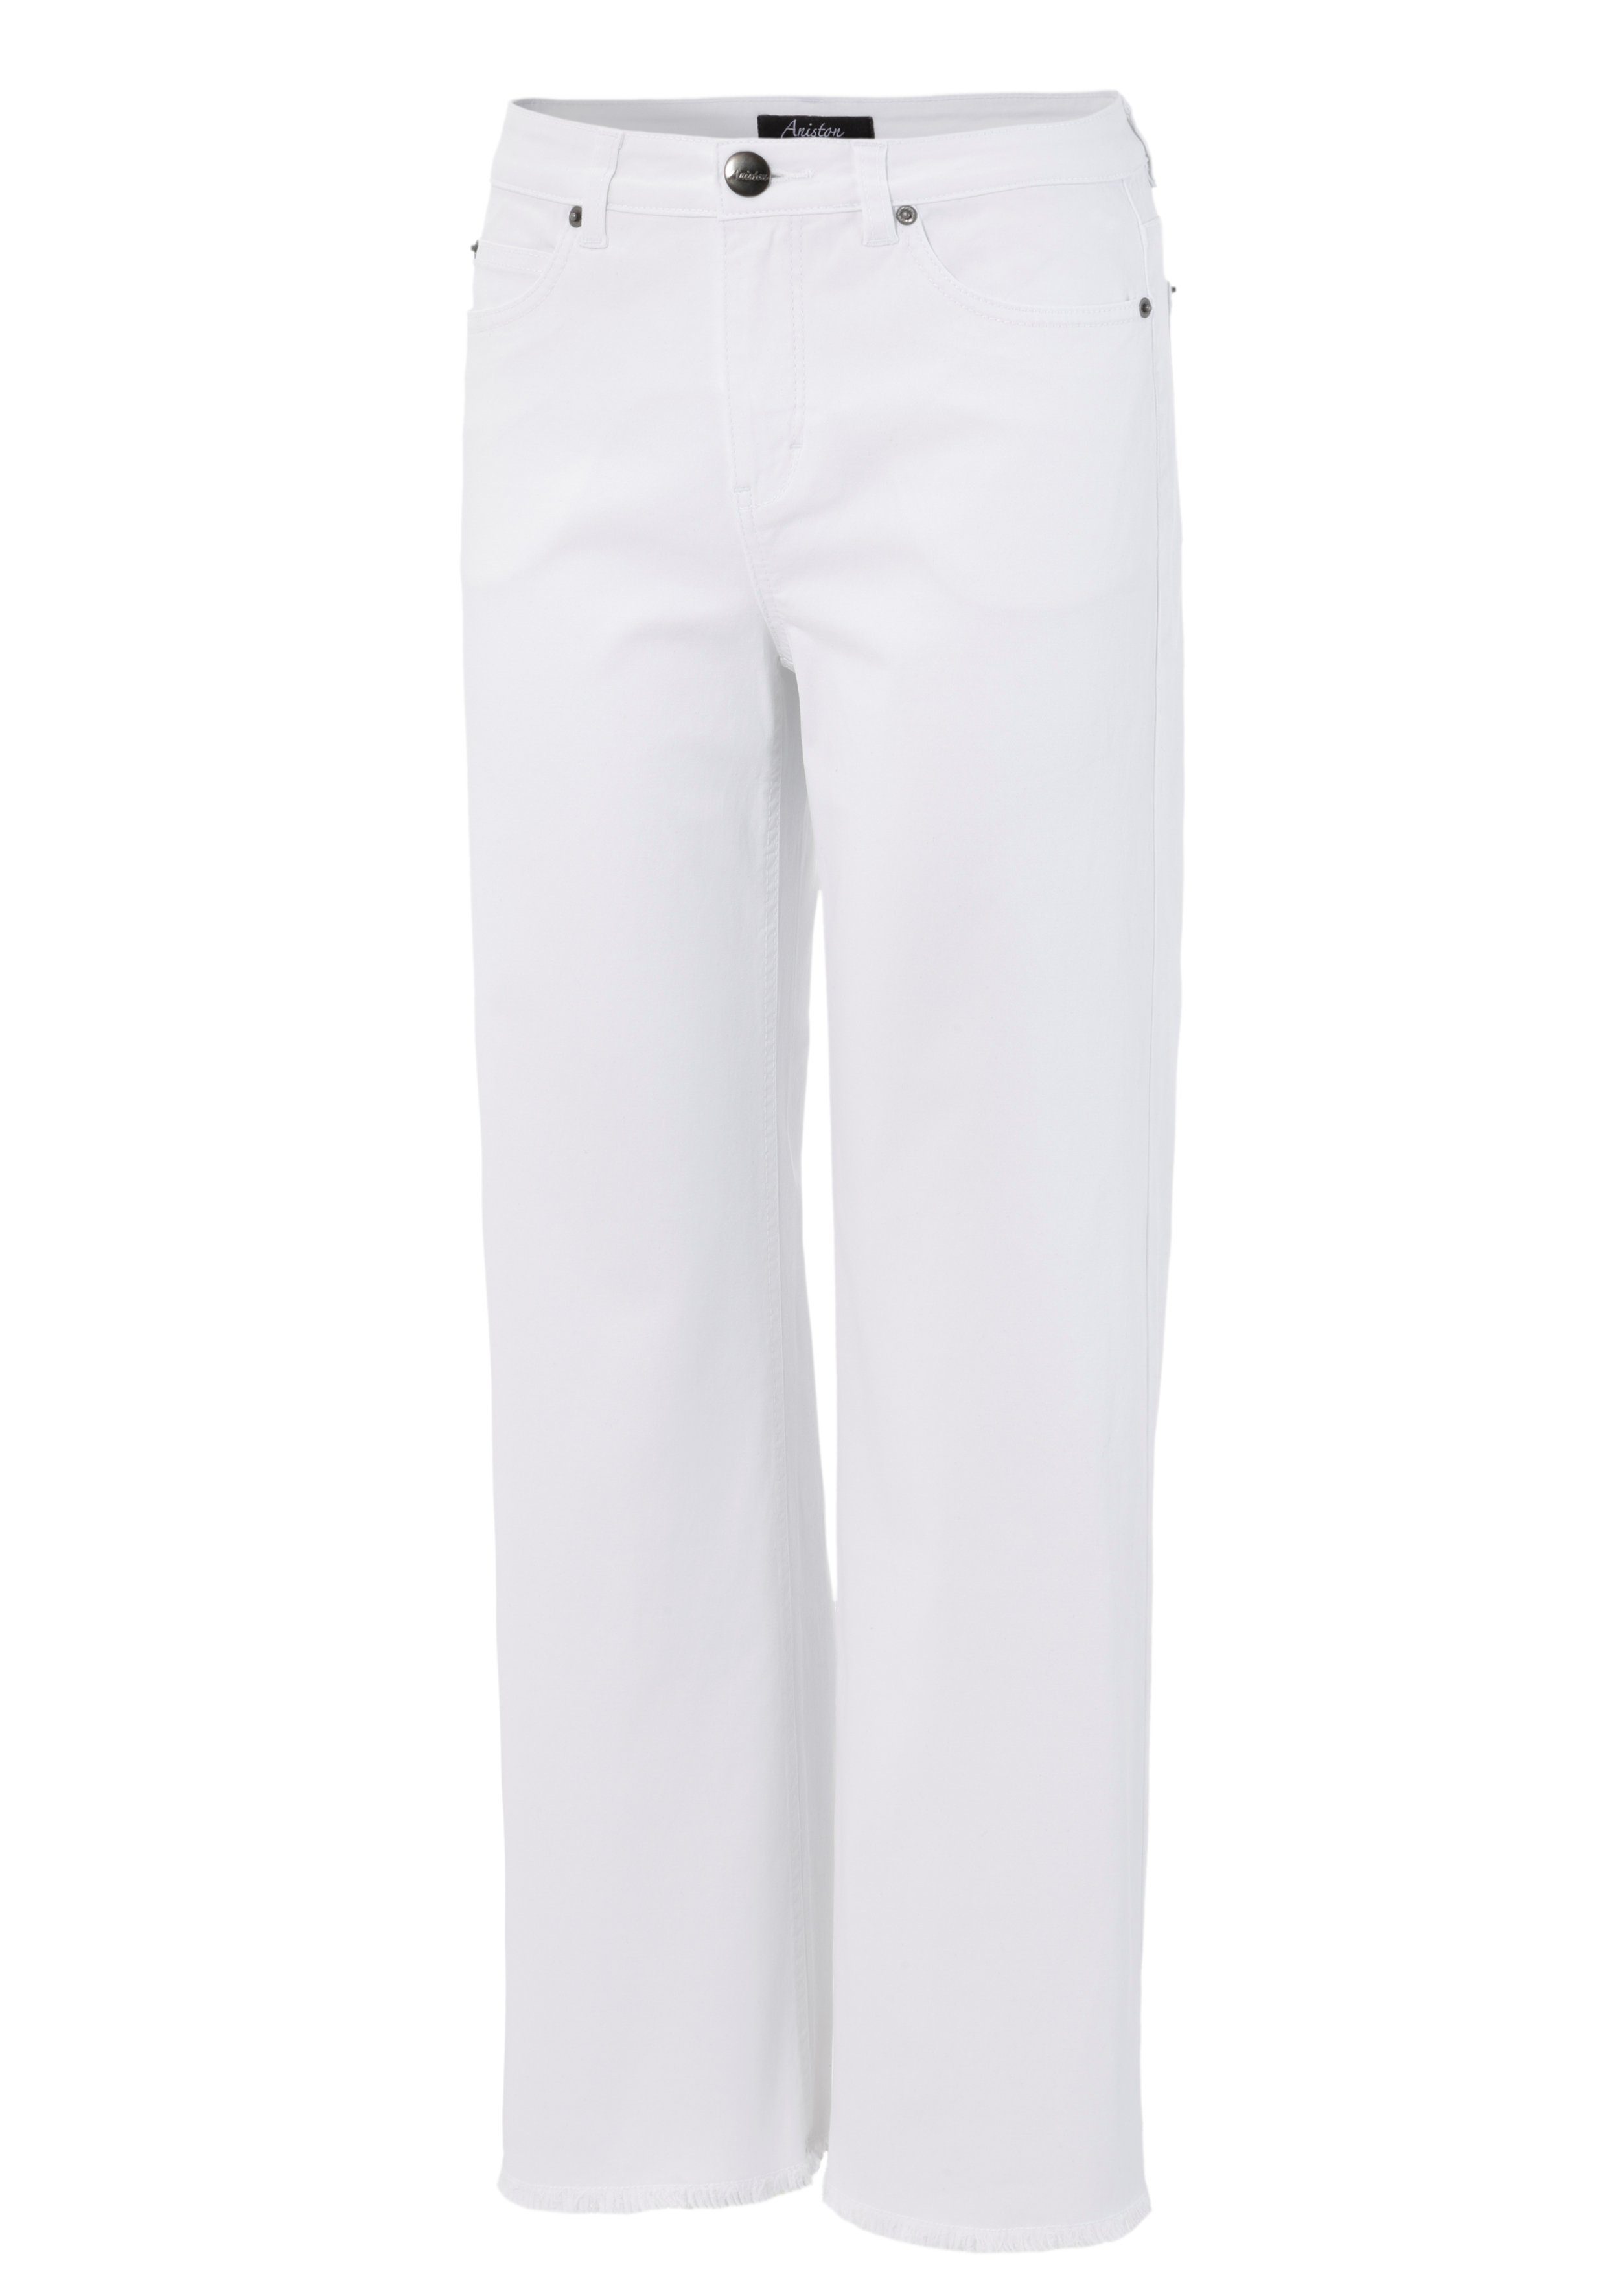 CASUAL leicht 7/8-Jeans mit Beinabschluss Aniston white ausgefranstem